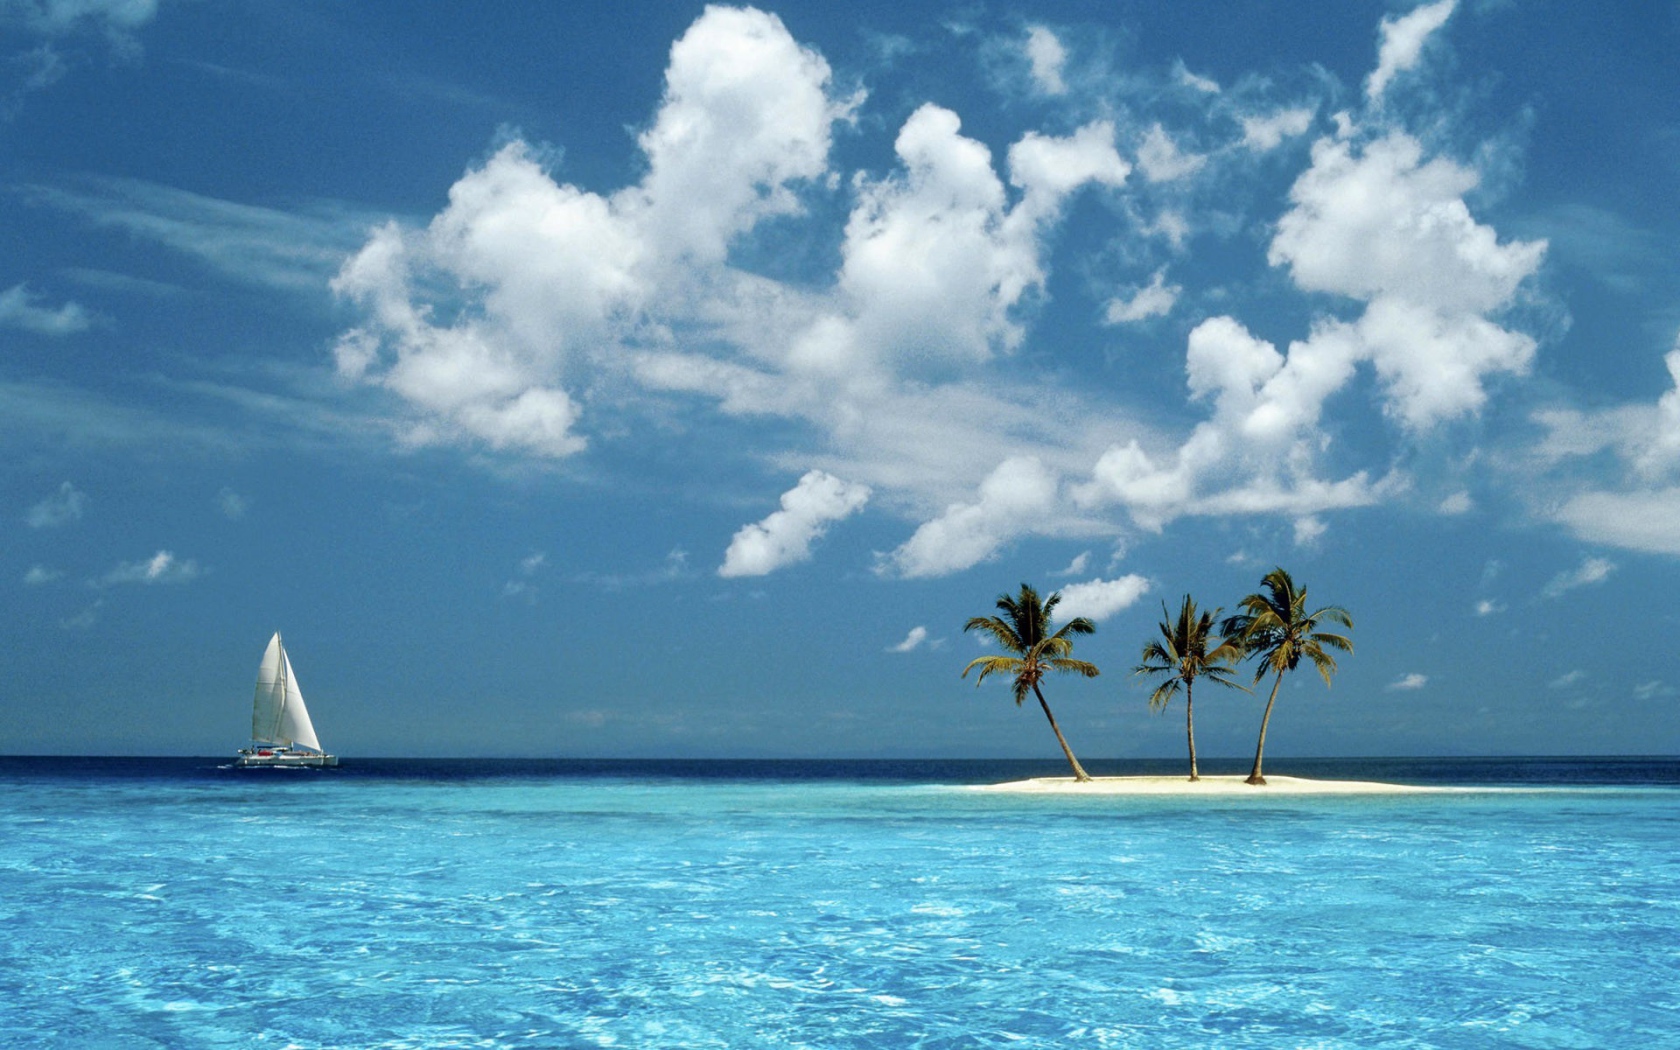 Парусник у песчаного острова с пальмами